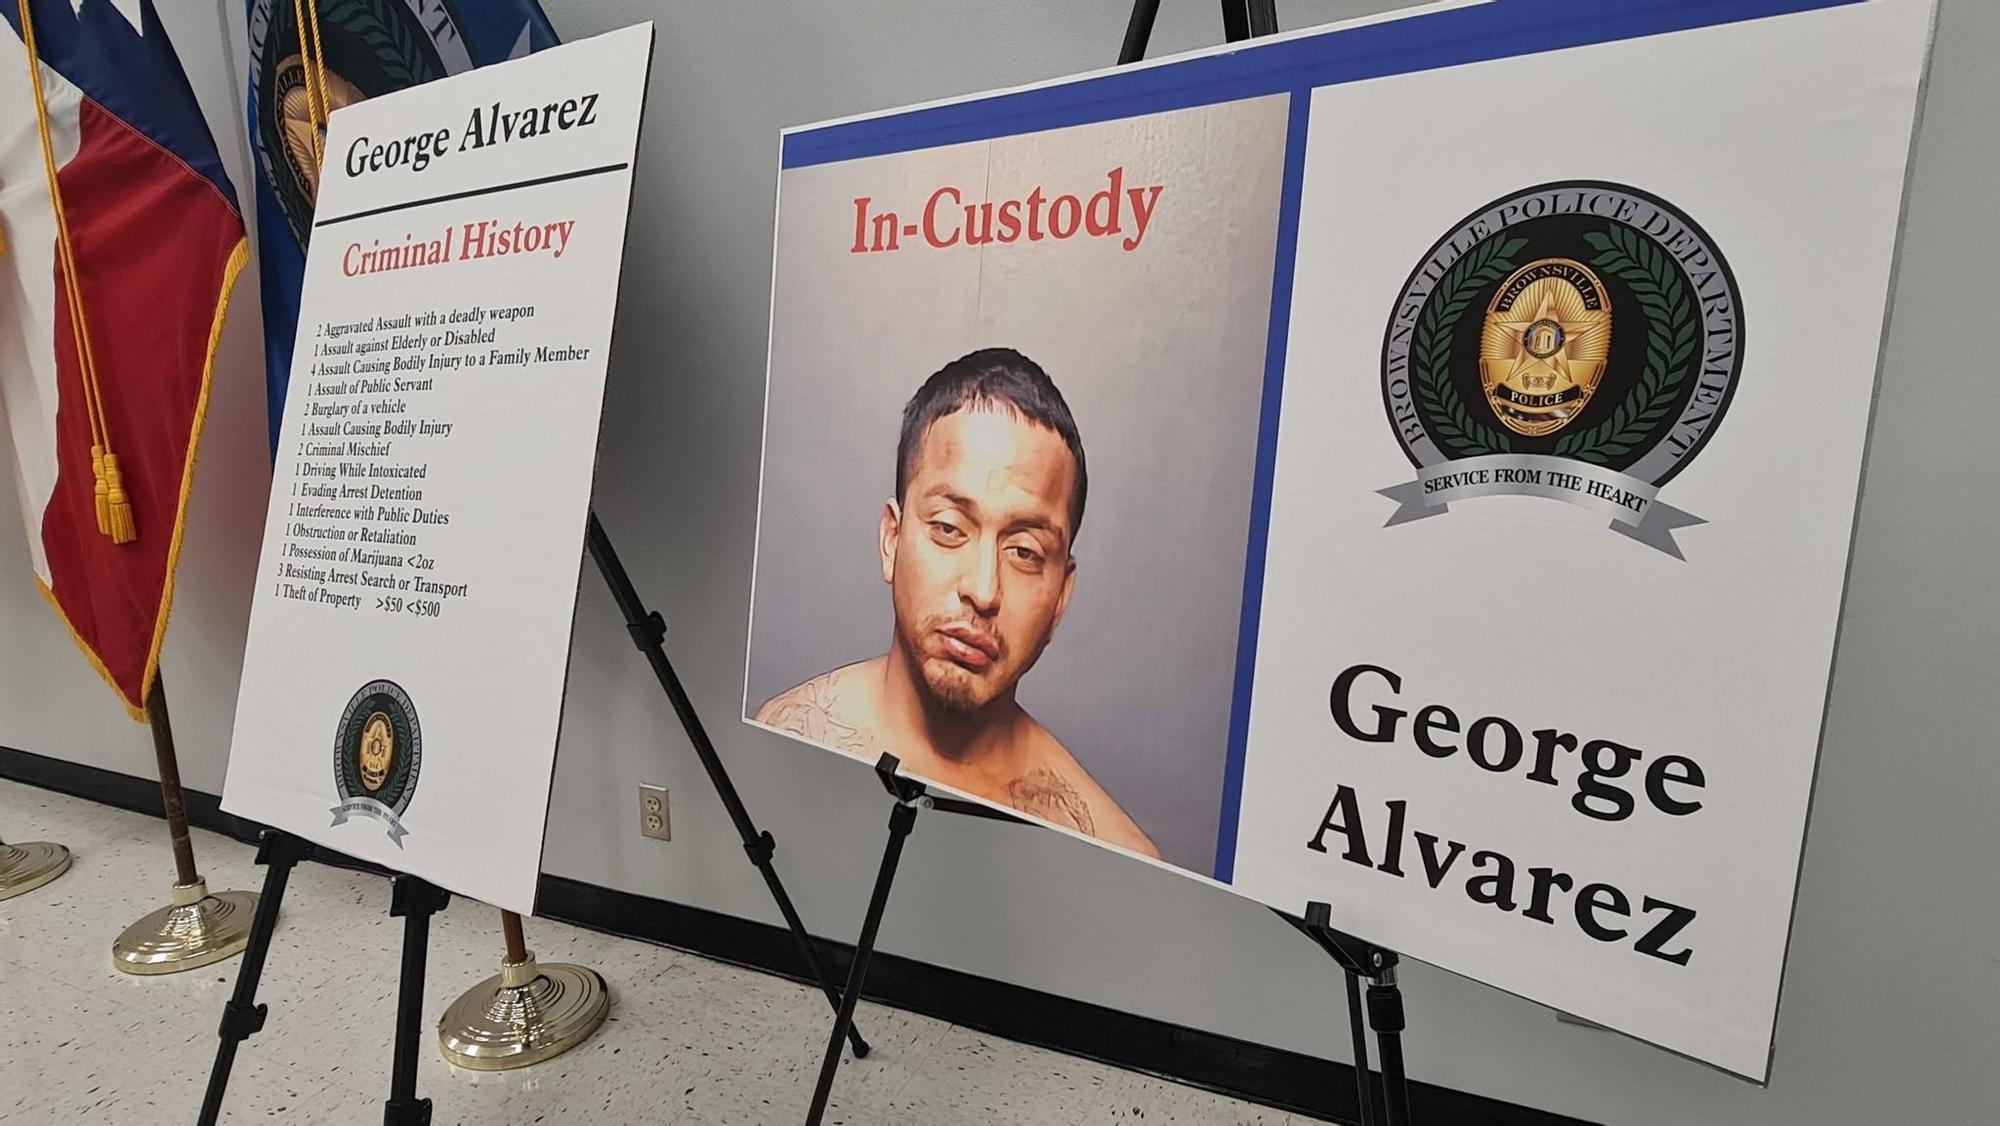 La foto de George Alvarez, el conductor que mató a ocho personas, expuesta durante la rueda de prensa organizada por la policía de Brownsville.